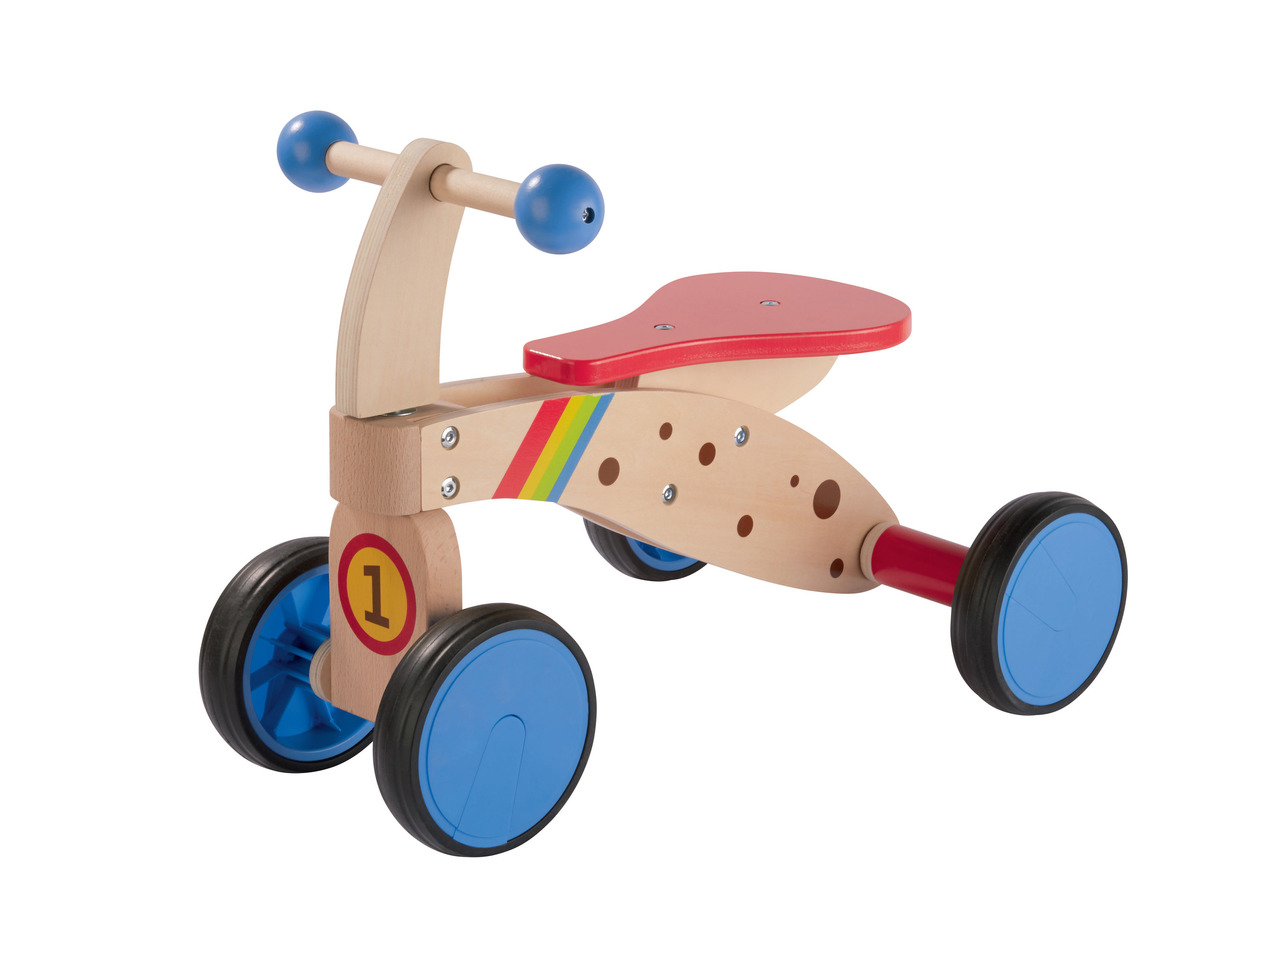 PLAYTIVE JUNIOR Kids' Wooden Trike/ Rocking Horse